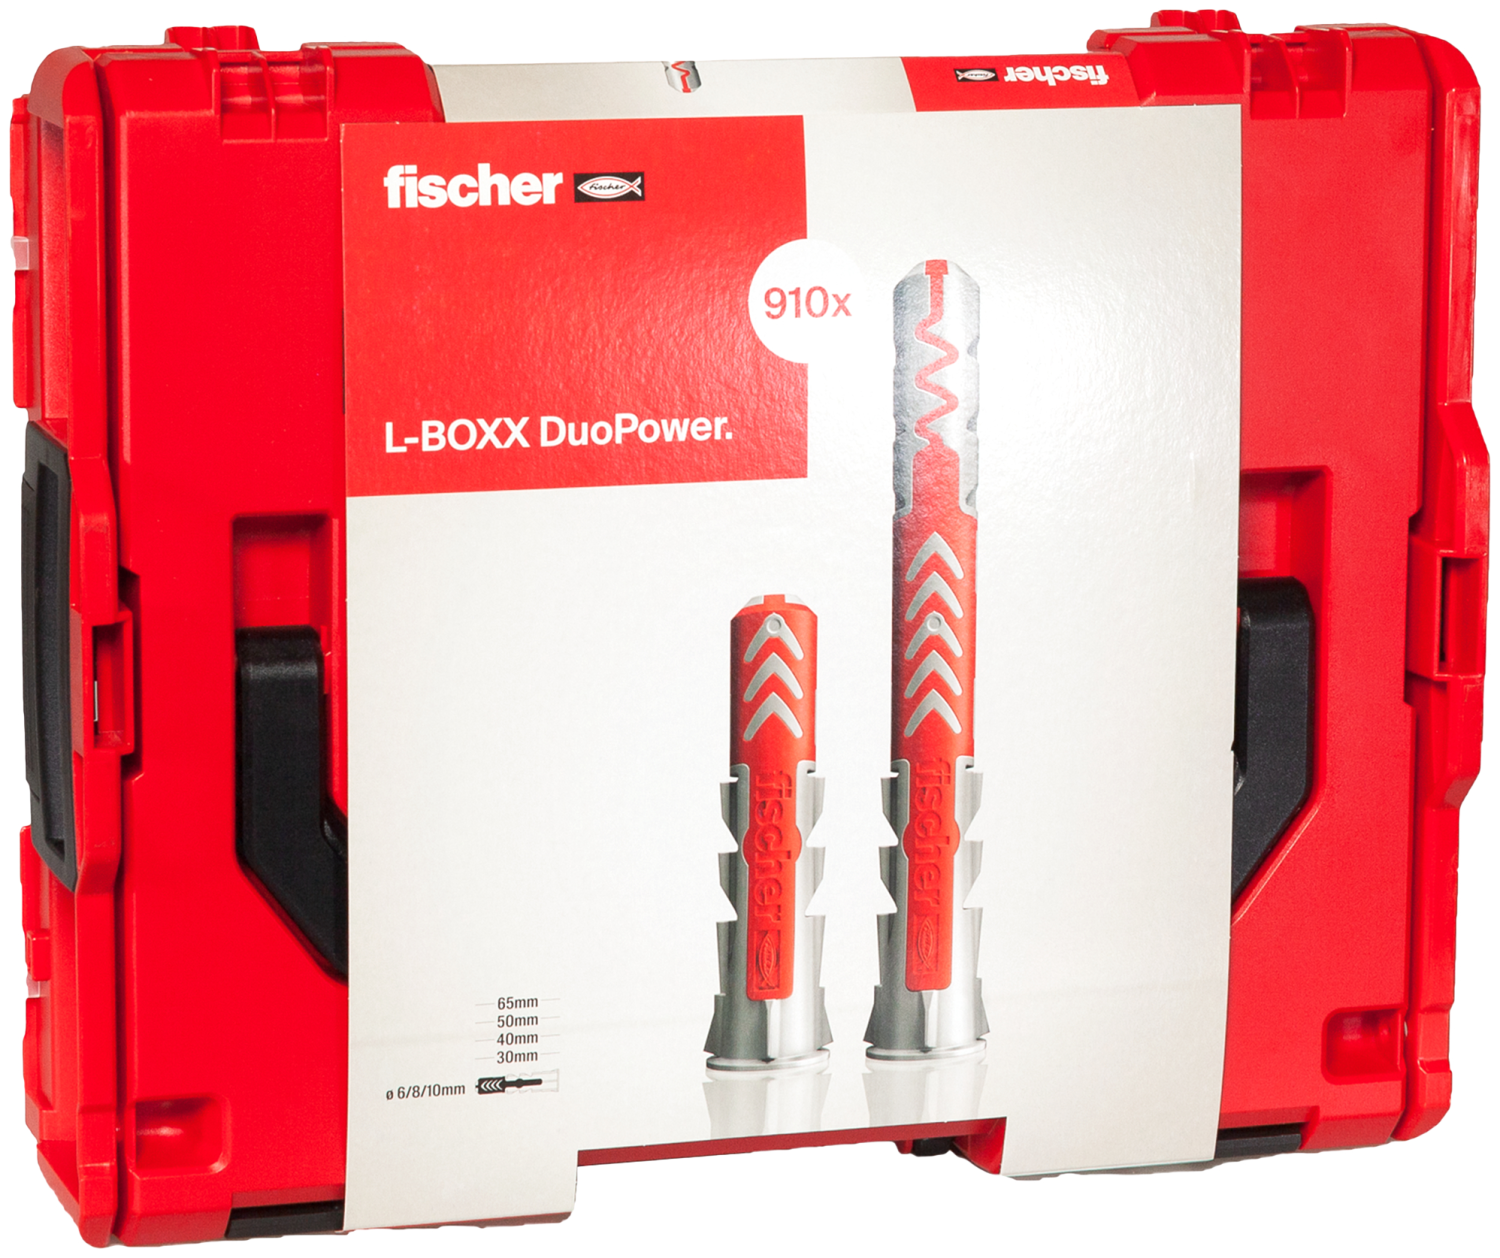 fischer DuoPower L-BOXX 102 Jeu de chevilles 910 pièces en L-Boxx